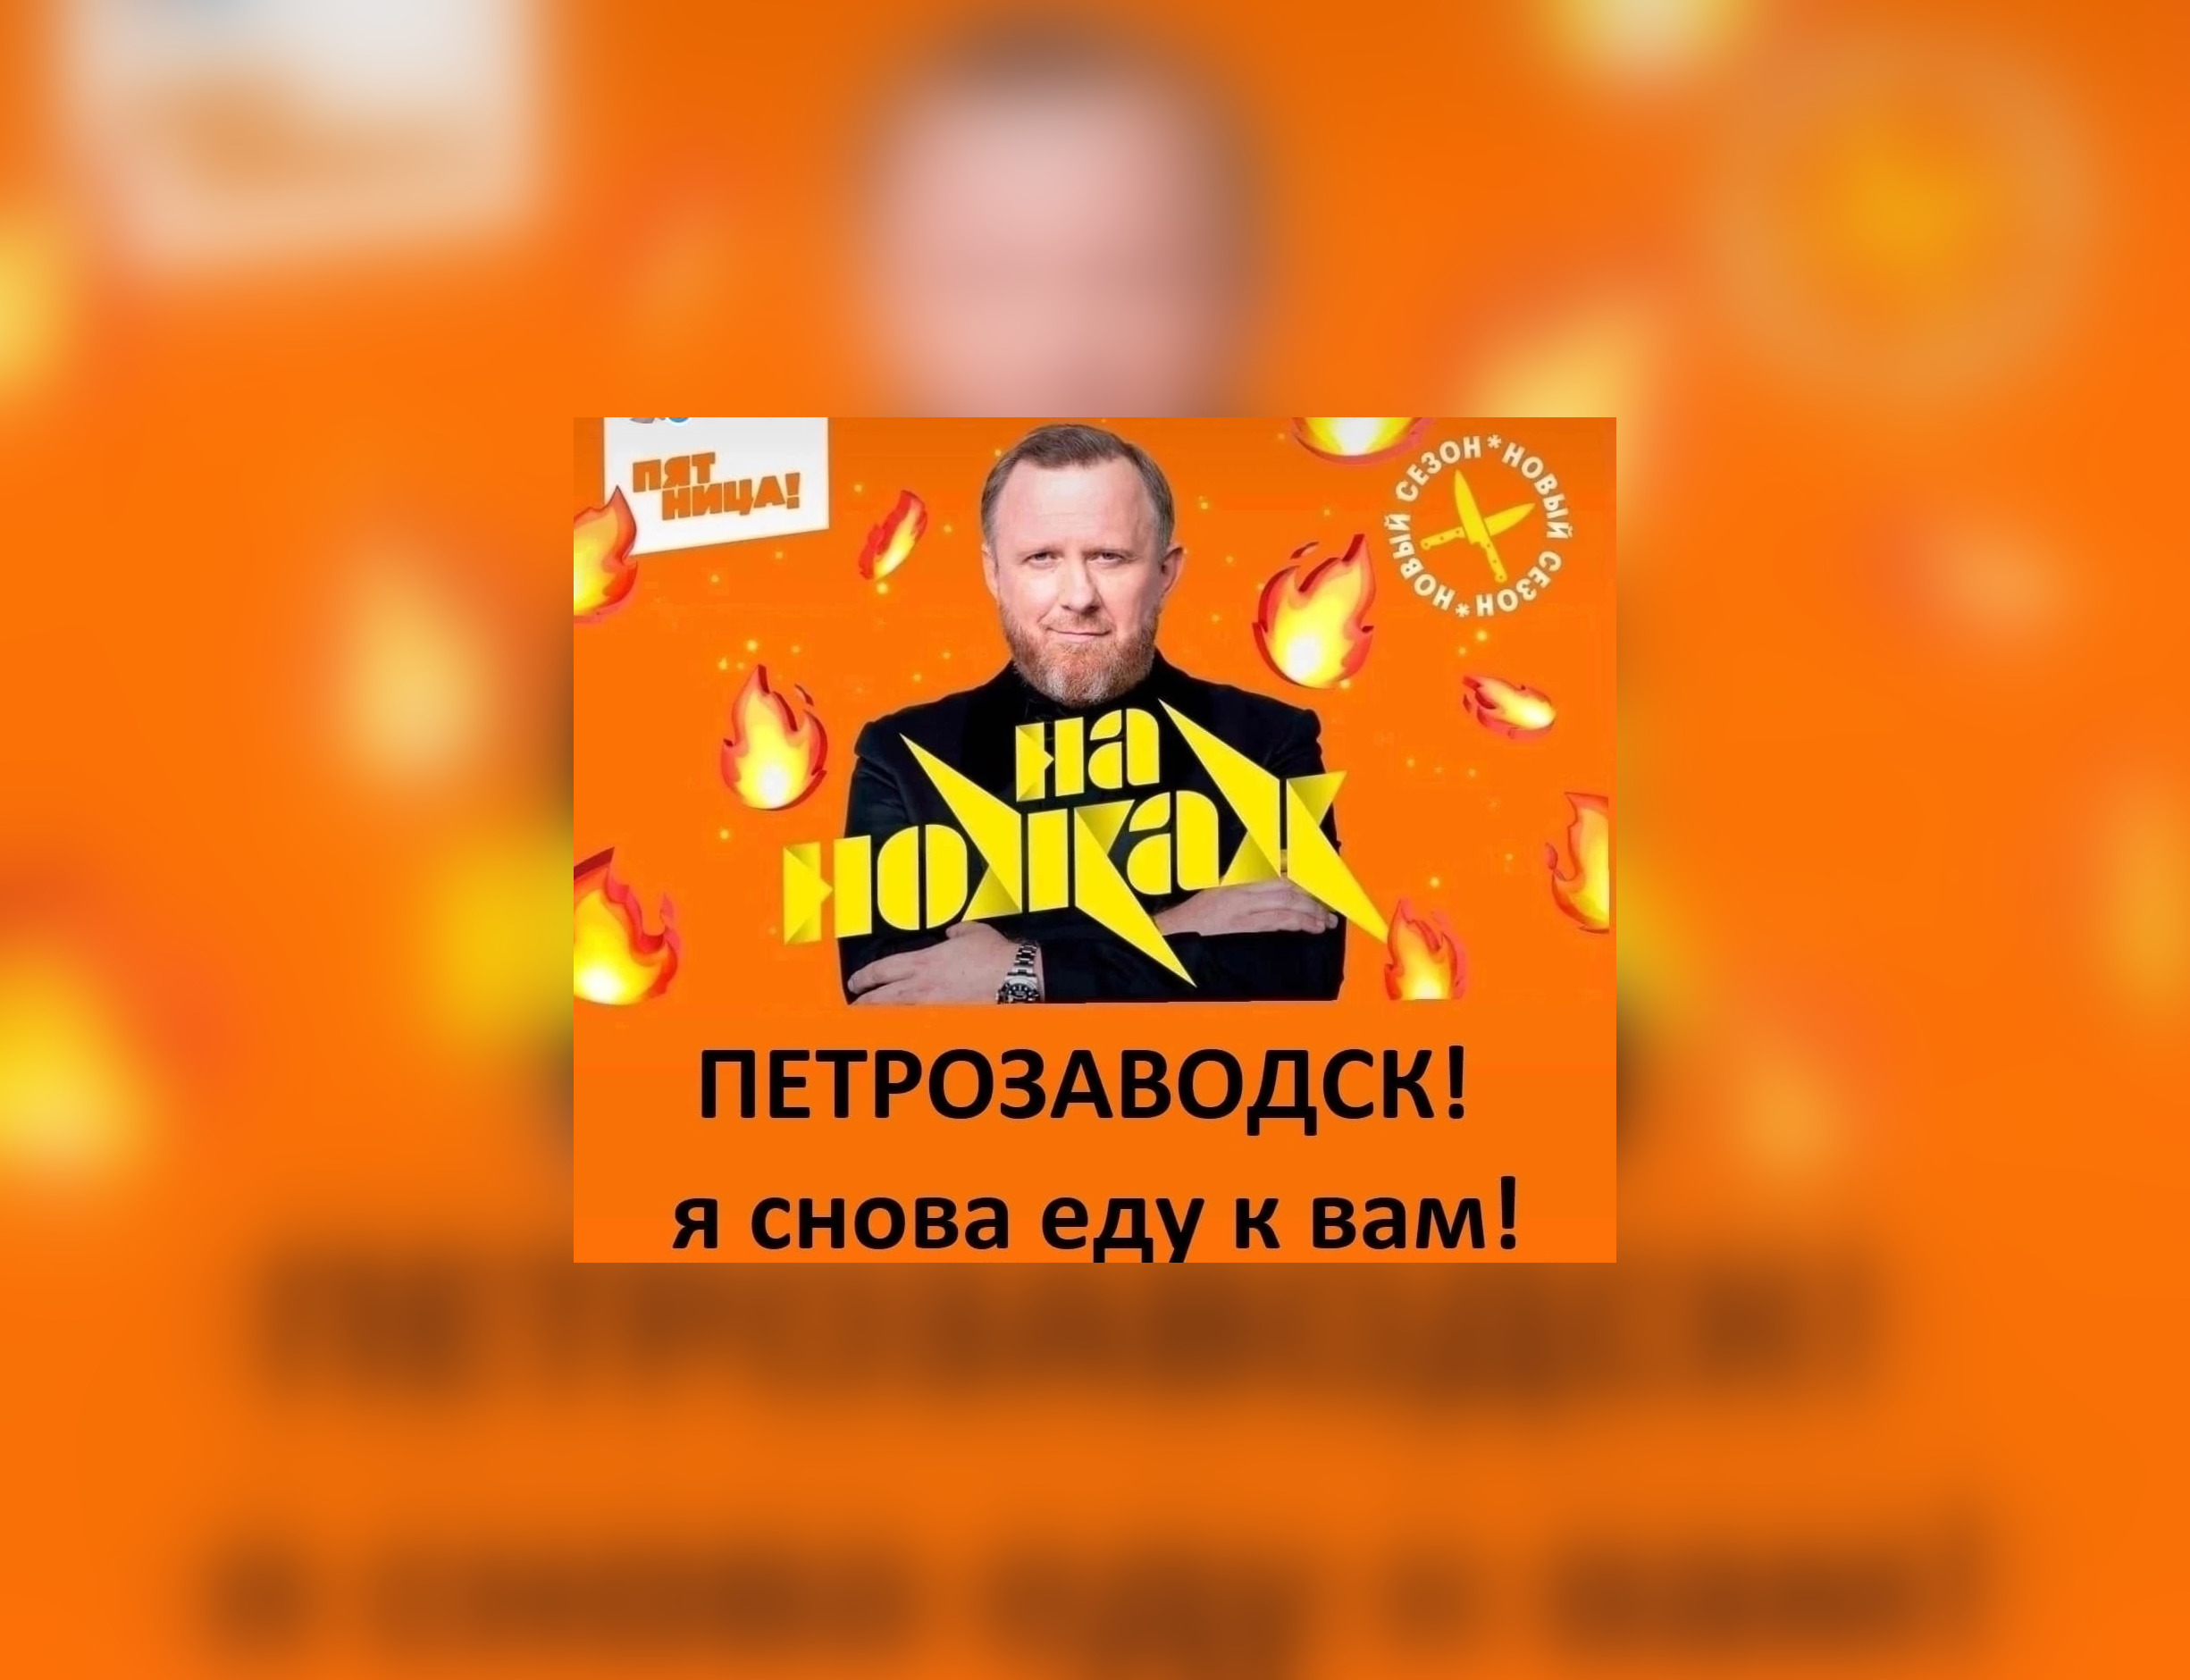 В Петрозаводске ищут поклонников популярного кулинарного шоу «На ножах»